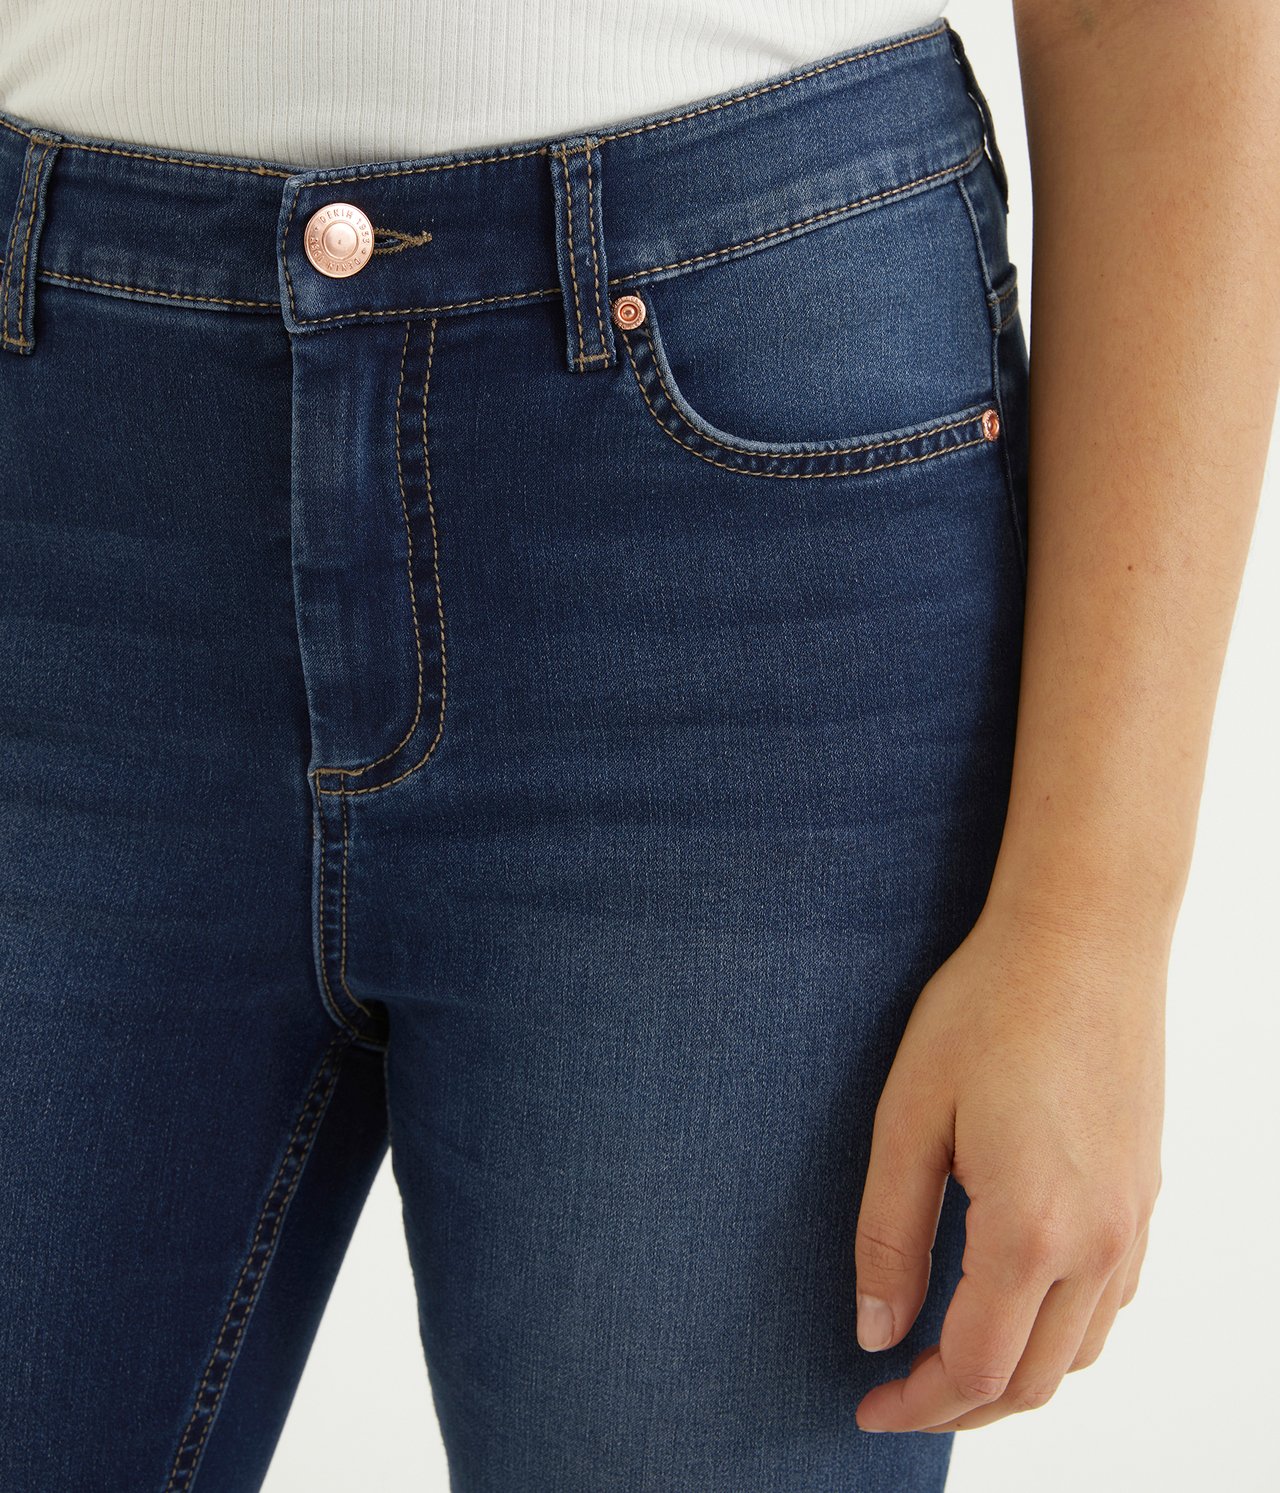 Super slim jeans short leg Mörk denim - null - 3